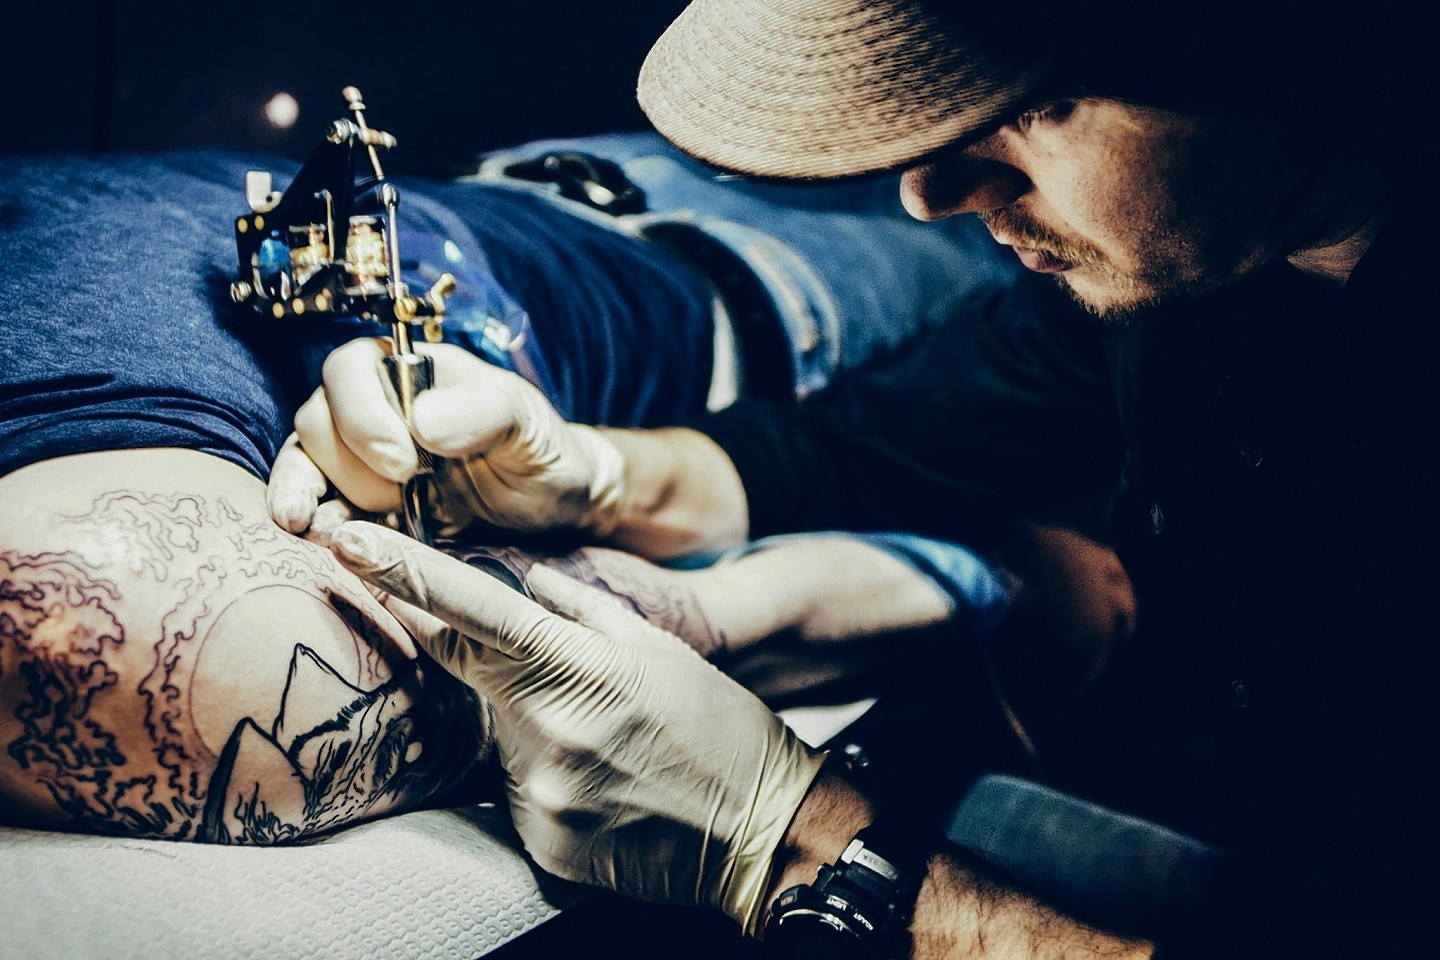 Aberdeen tattoo artist James Deveron